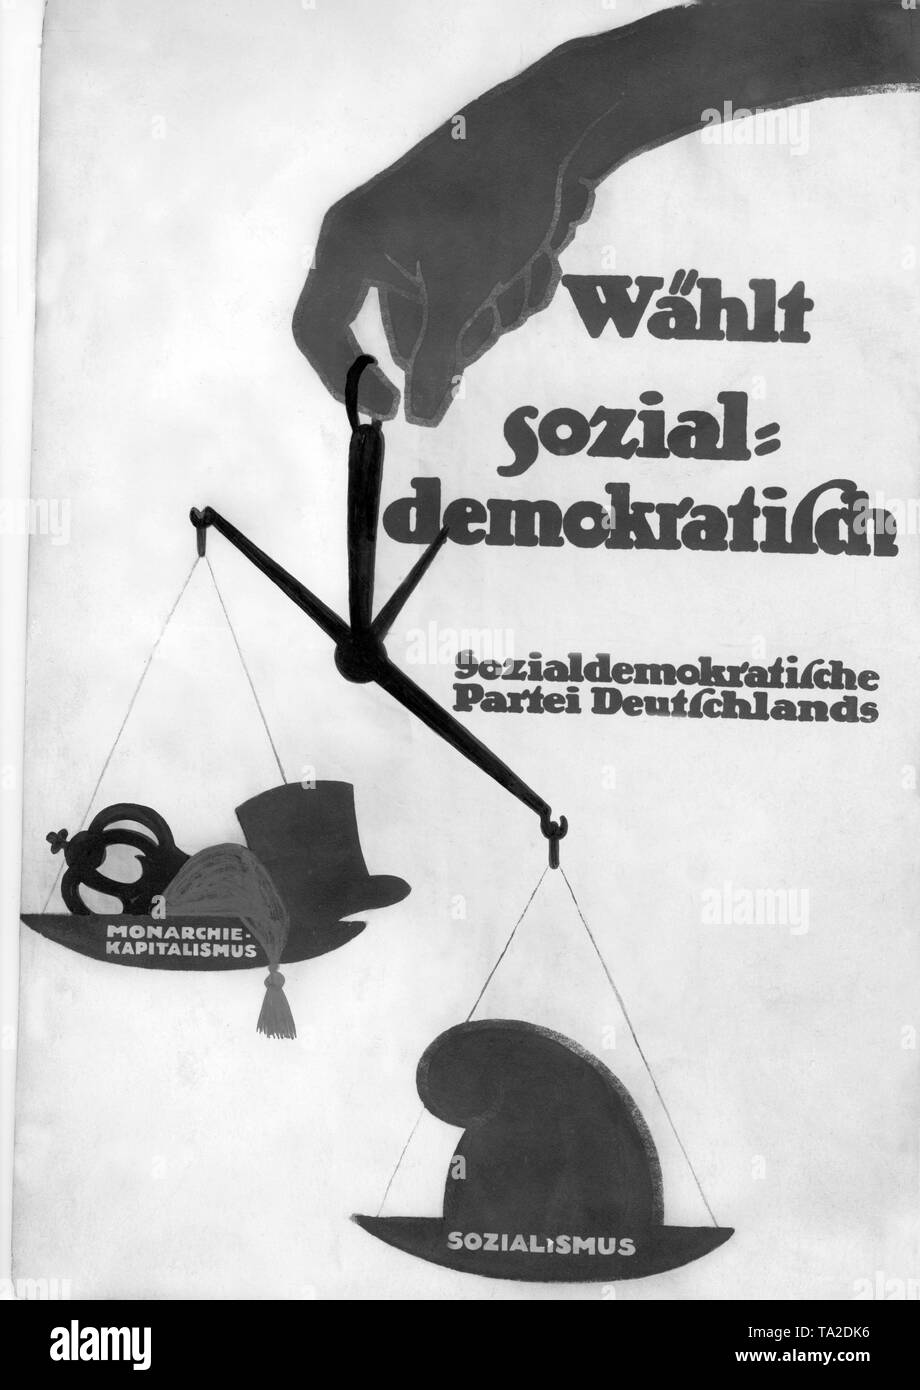 Wahlplakat der SPD für die Wahl der Nationalversammlung. Die Arbeiter sind gefordert Sozialismus zu wählen und damit gegen die Monarchie und den Kapitalismus zu stimmen. Stockfoto